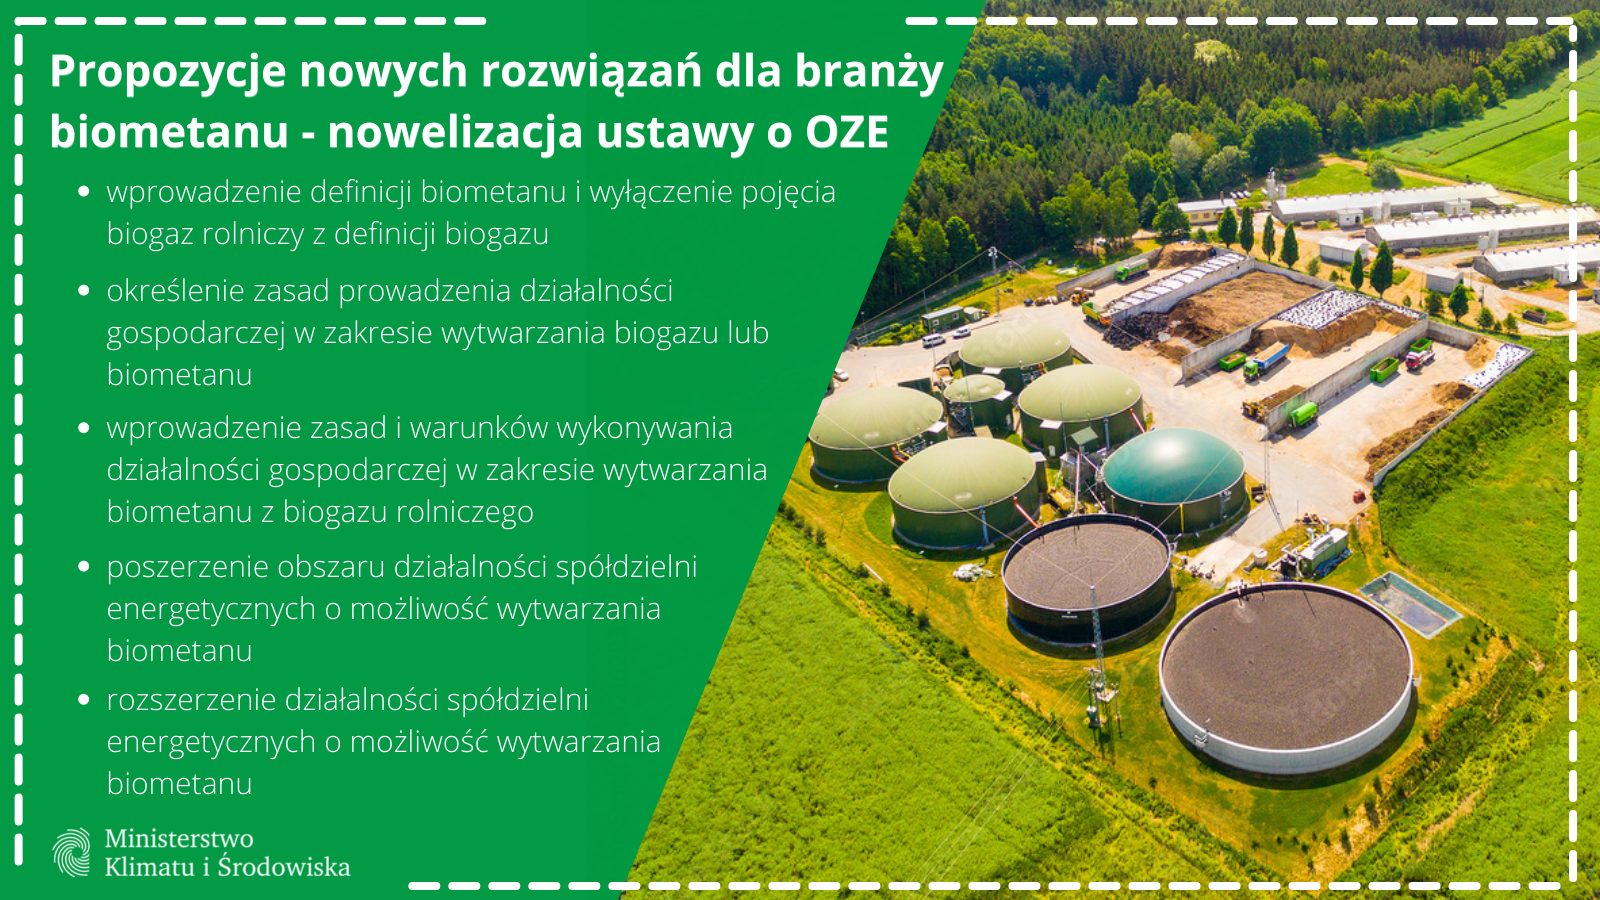 Propozycje nowych rozwiązań dla branży biometanu - nowelizacja ustawy o OZE:
wprowadzenie definicji biometanu i wyłączenie pojęcia biogaz rolniczy z definicji biogazu
określenie zasad prowadzenia działalności gospodarczej w zakresie wytwarzania biogazu lub biometanu
wprowadzenie zasad i warunków wykonywania działalności gospodarczej w zakresie wytwarzania biometanu z biogazu rolniczego
poszerzenie obszaru działalności spółdzielni energetycznych o możliwość wytwarzania biometanu
rozszerzenie działalności spółdzielni energetycznych o możliwość wytwarzania biometanu